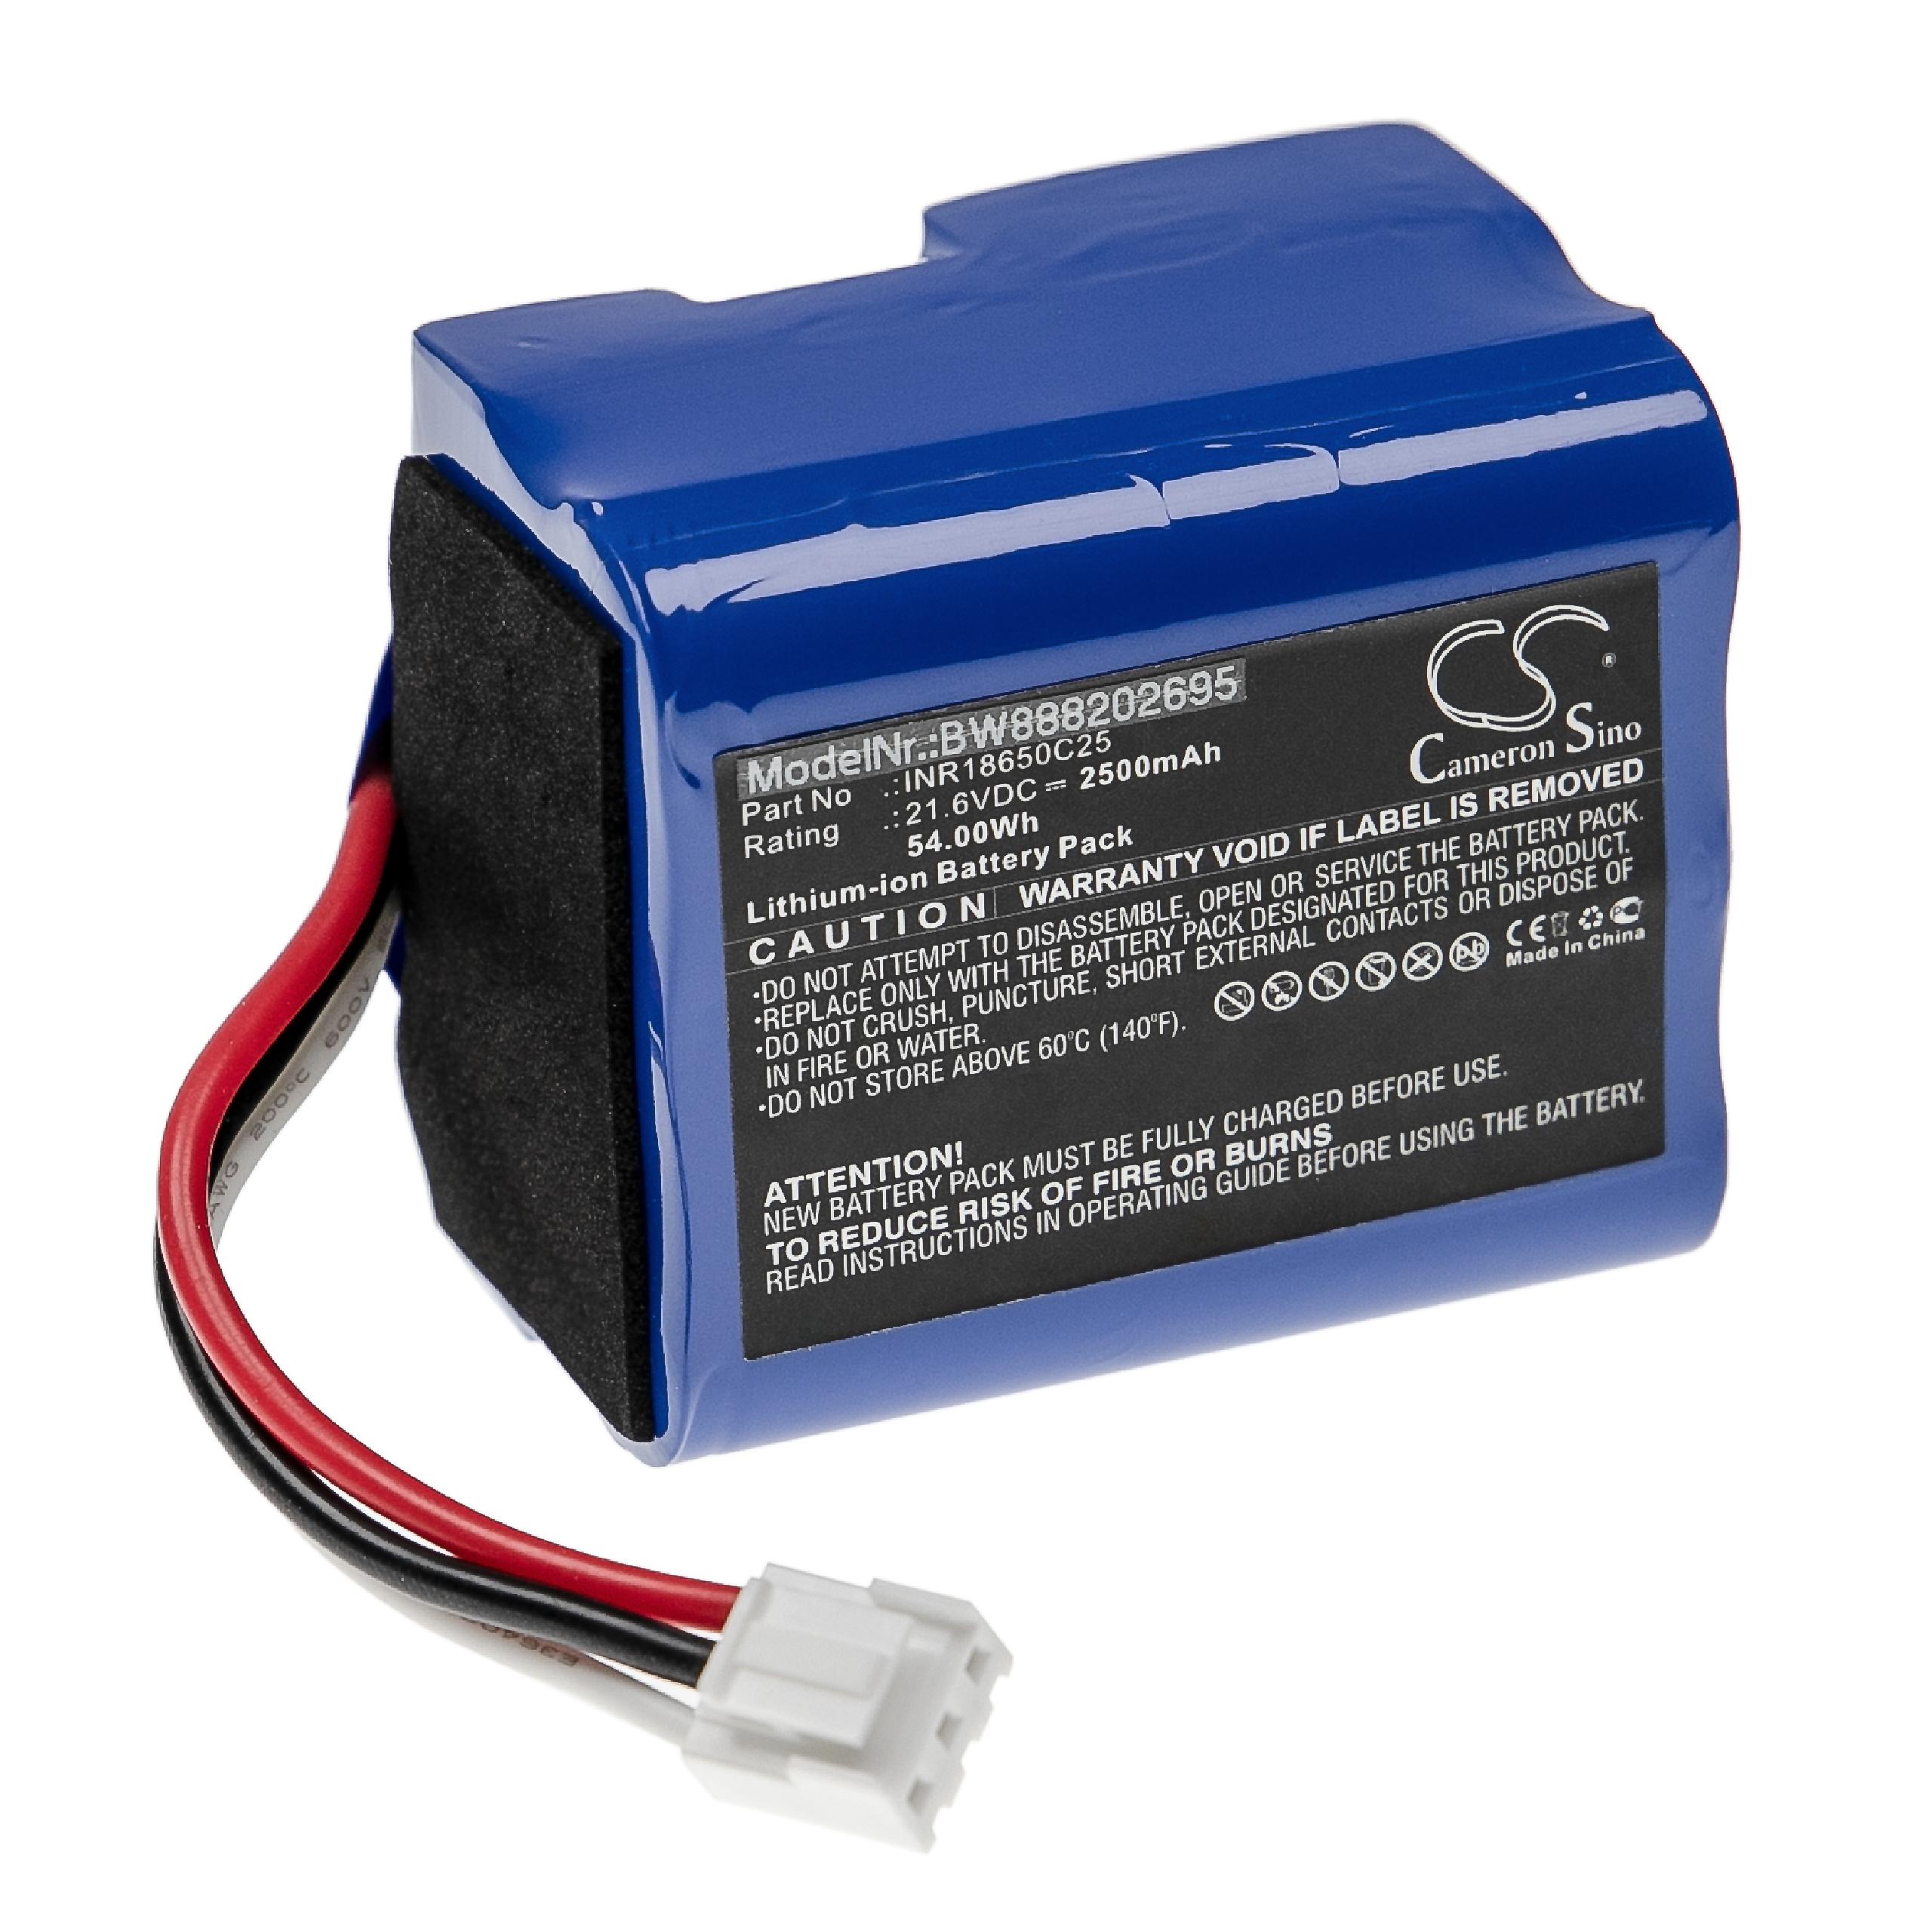 Batteria sostituisce Philips 3000-018-25613, 300002906404 per aspirapolvere Philips - 2500mAh 21,6V Li-Ion